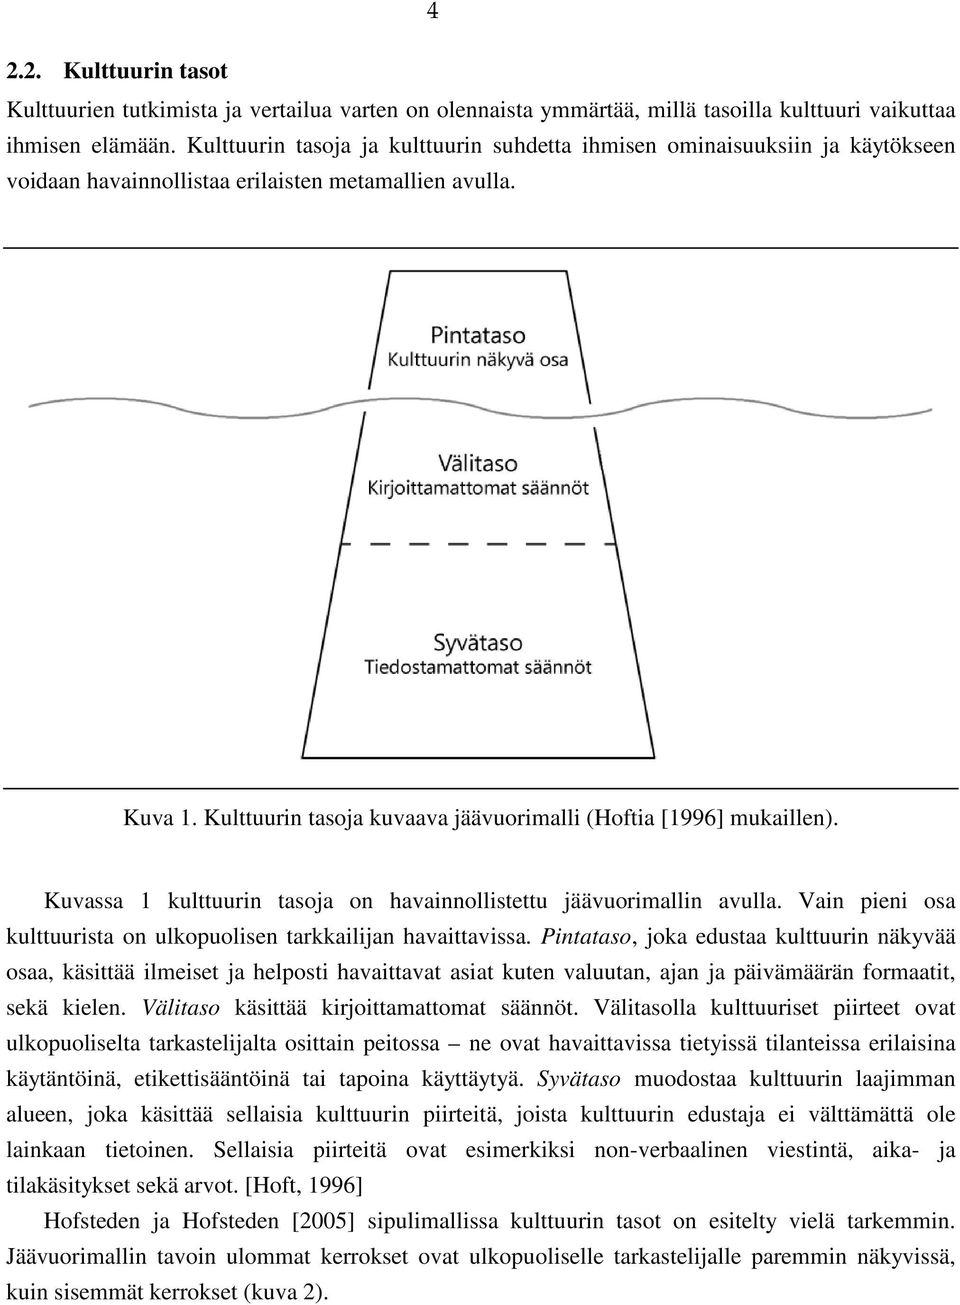 Kulttuurin tasoja kuvaava jäävuorimalli (Hoftia [1996] mukaillen). Kuvassa 1 kulttuurin tasoja on havainnollistettu jäävuorimallin avulla.